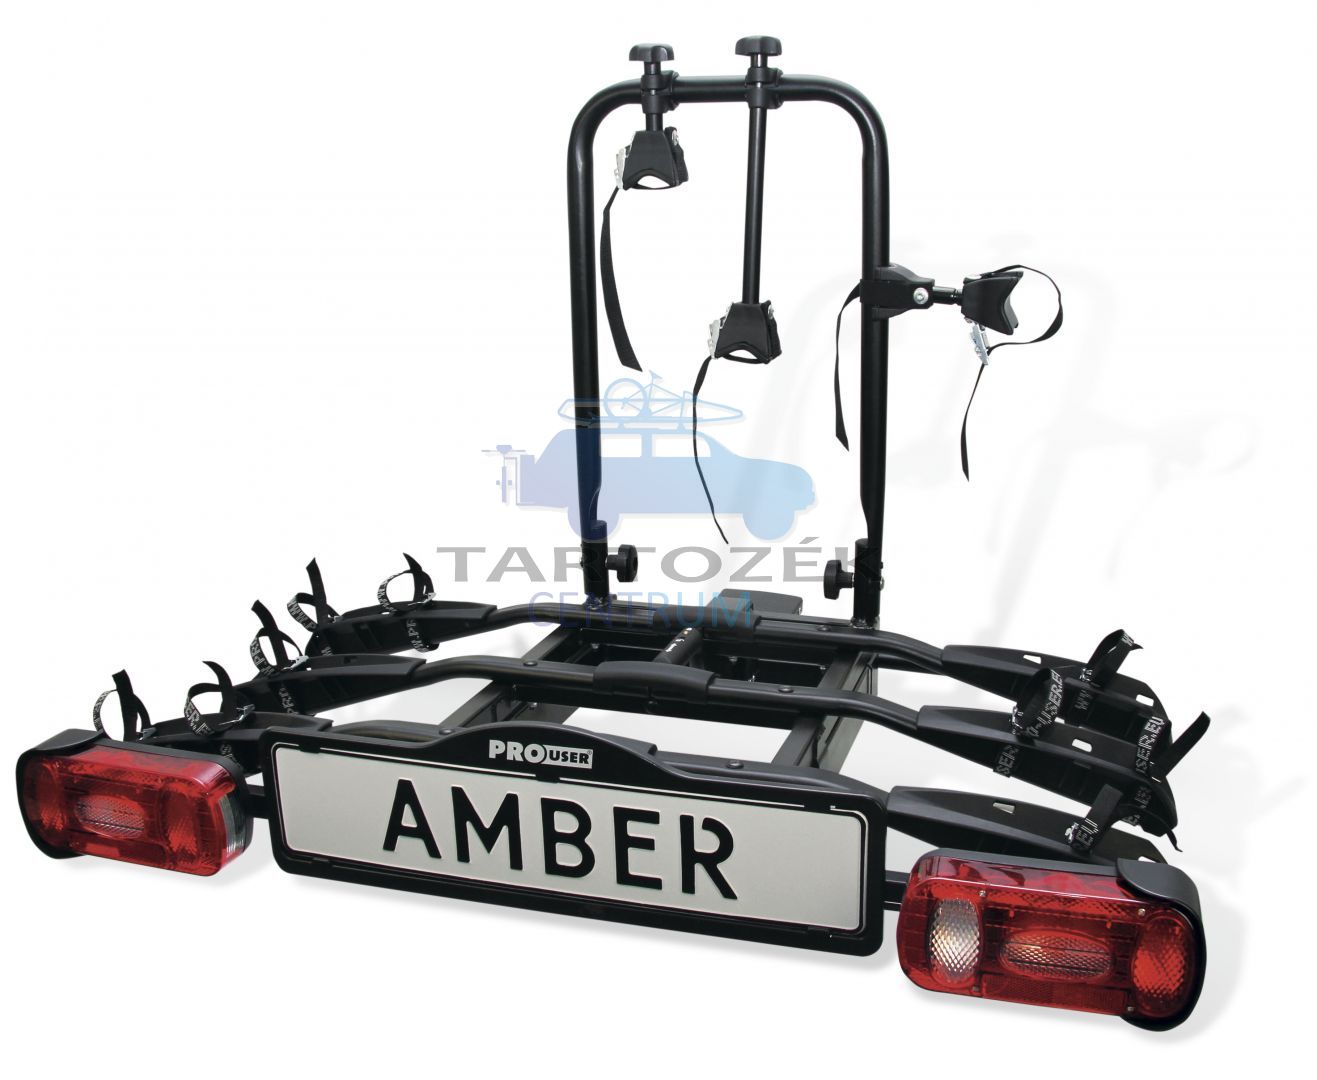 Pro-User Amber III 91731 3-as kerékpártartó vonóhorogra